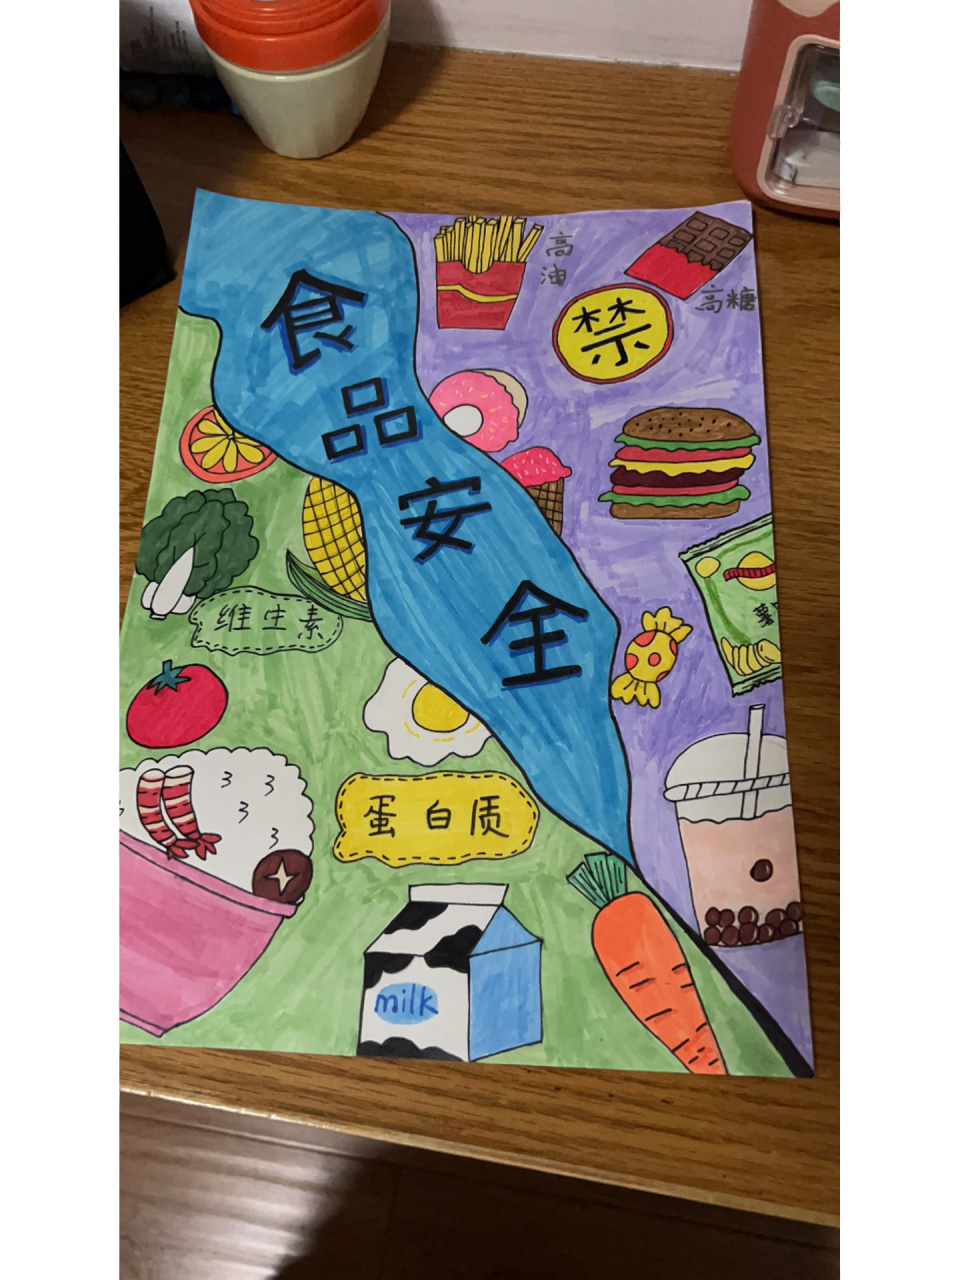 食品安全绘画六年级图片